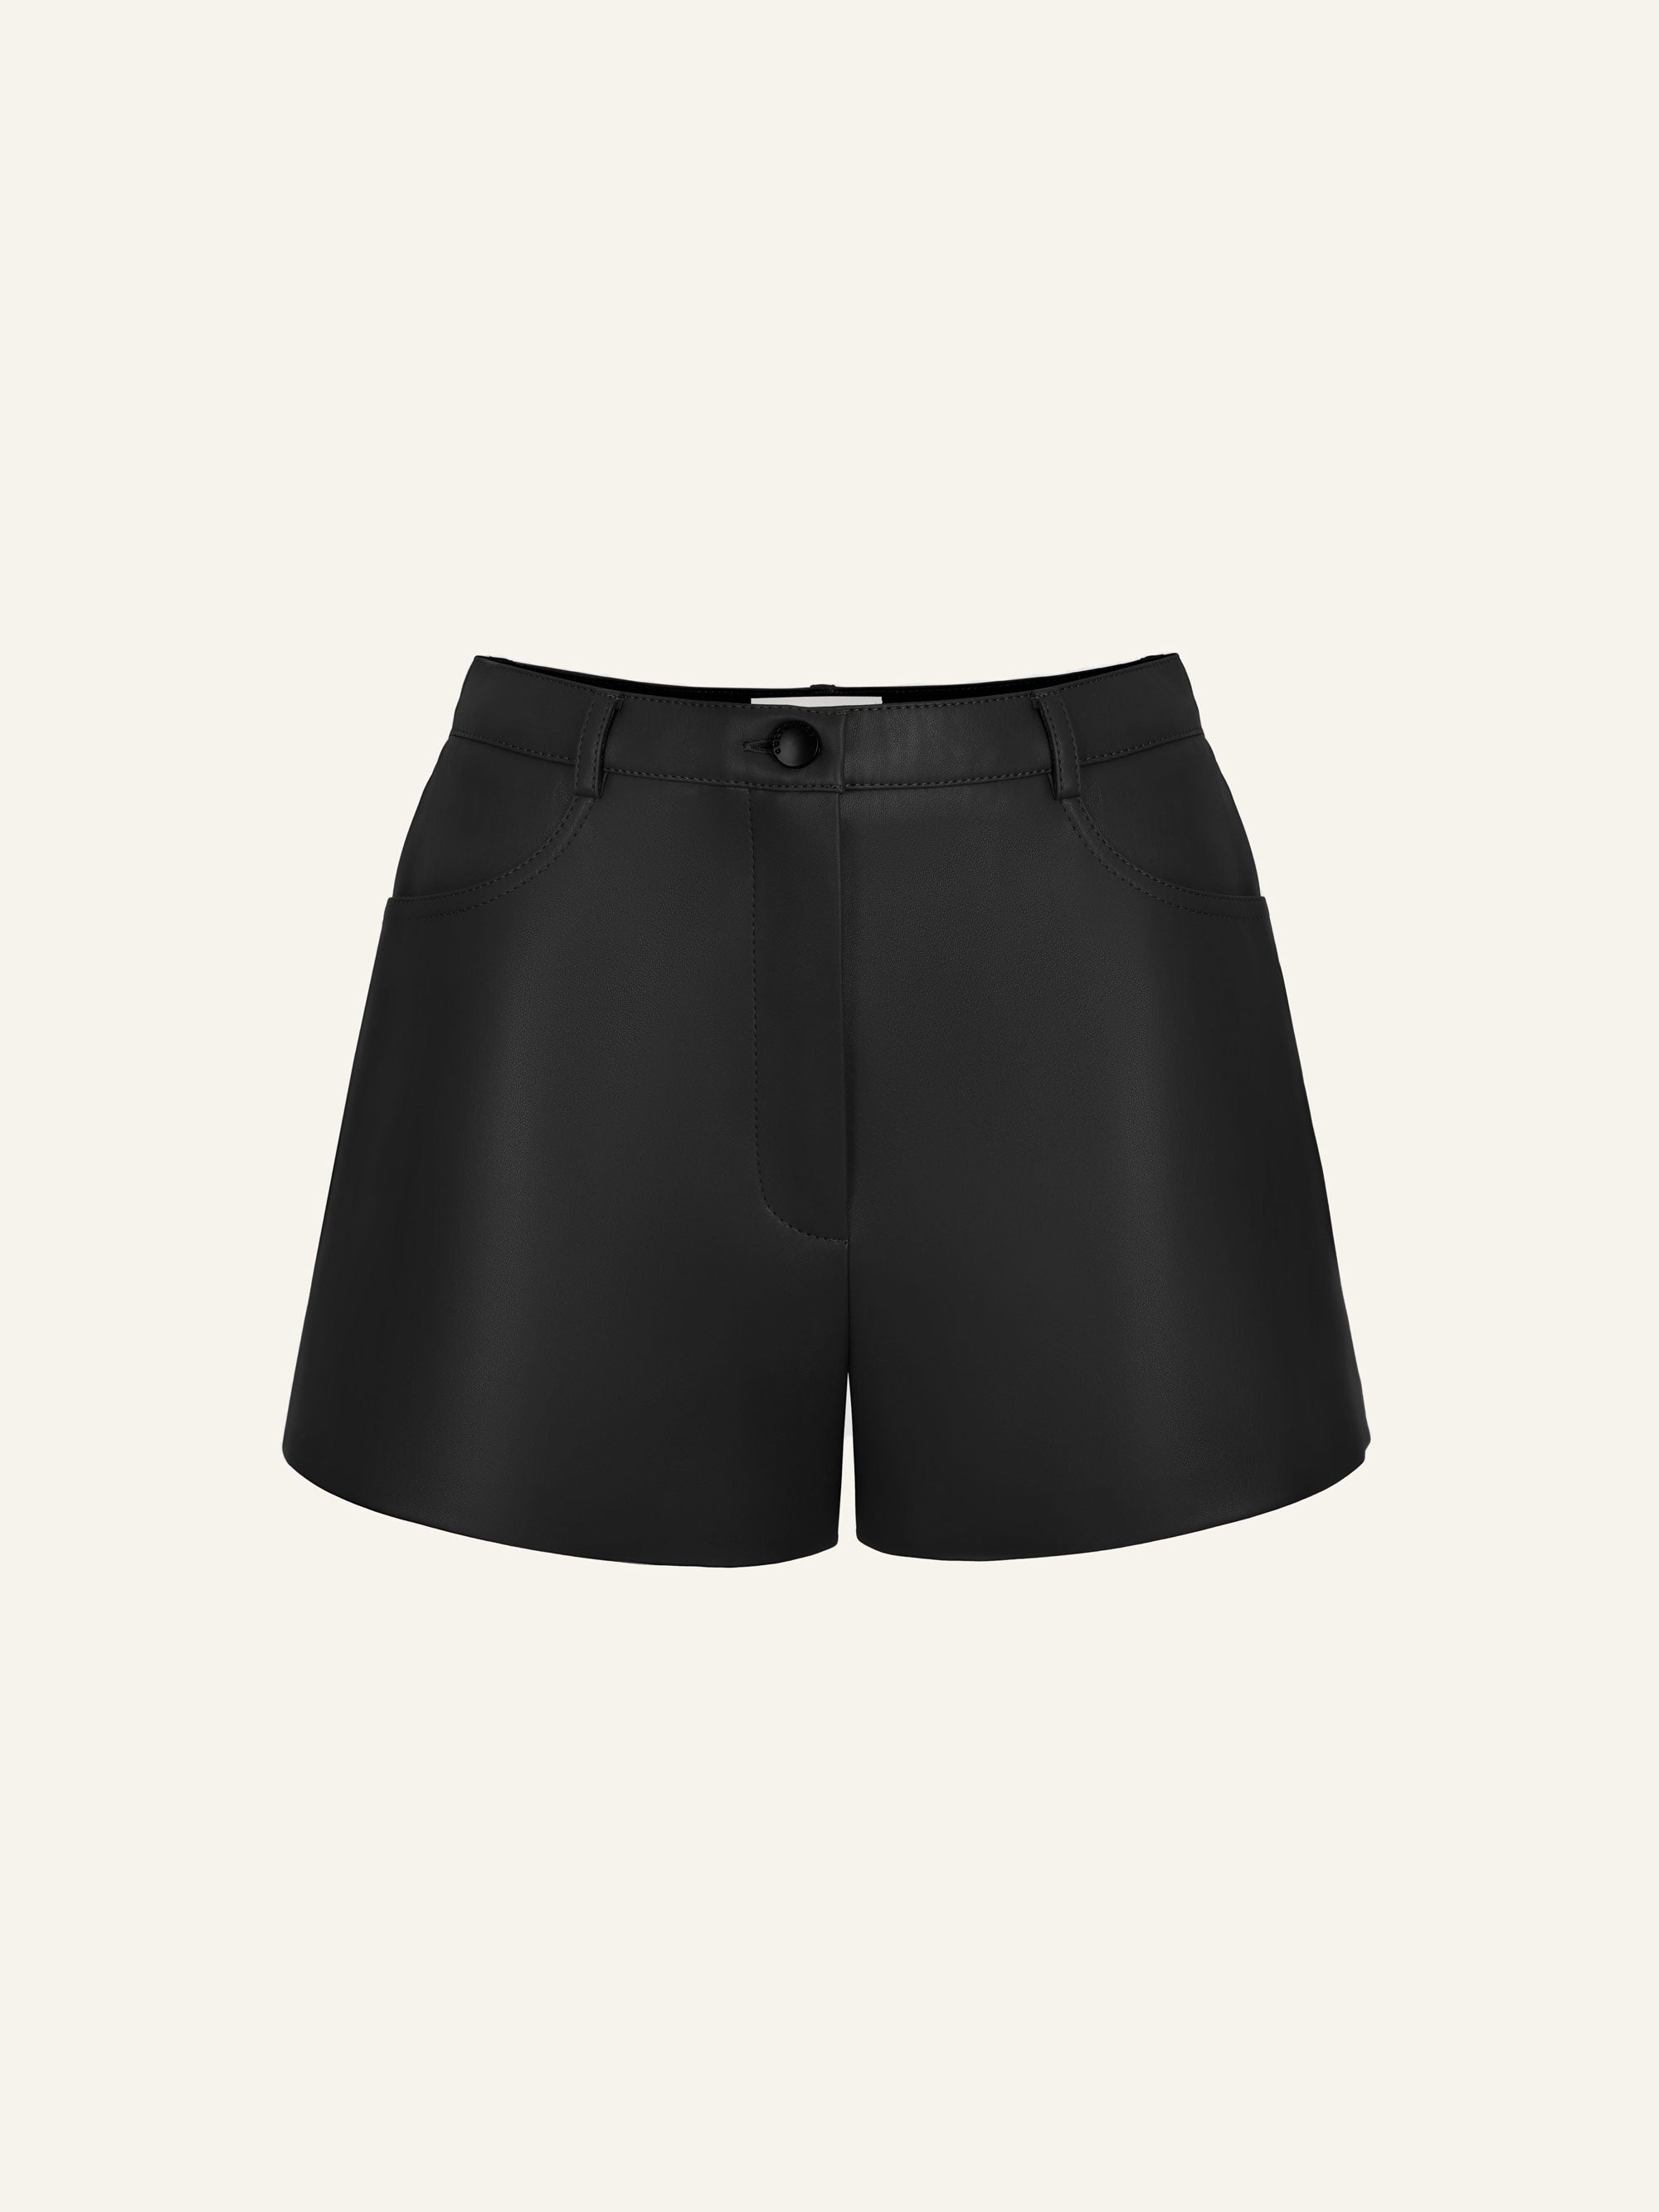 Killa shorts in Onyx – CULTNAKED